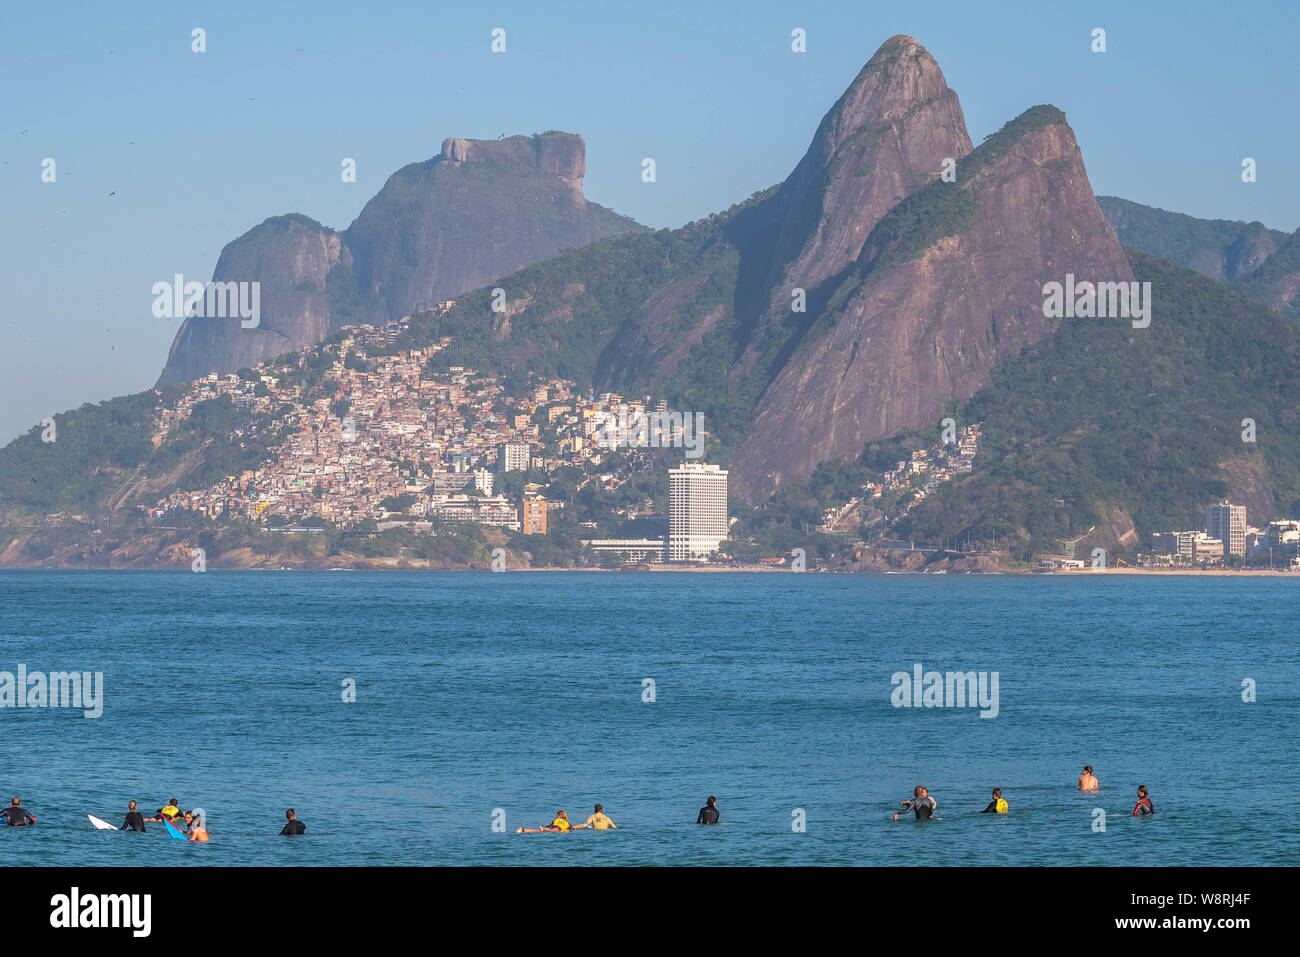 Rio de Janeiro, Brésil - le 10 août 2019 : la plage d'Ipanema et d'Arpoador avec surfeurs amateurs en attente de vagues sur les eaux bleues et les montagnes en zone Banque D'Images